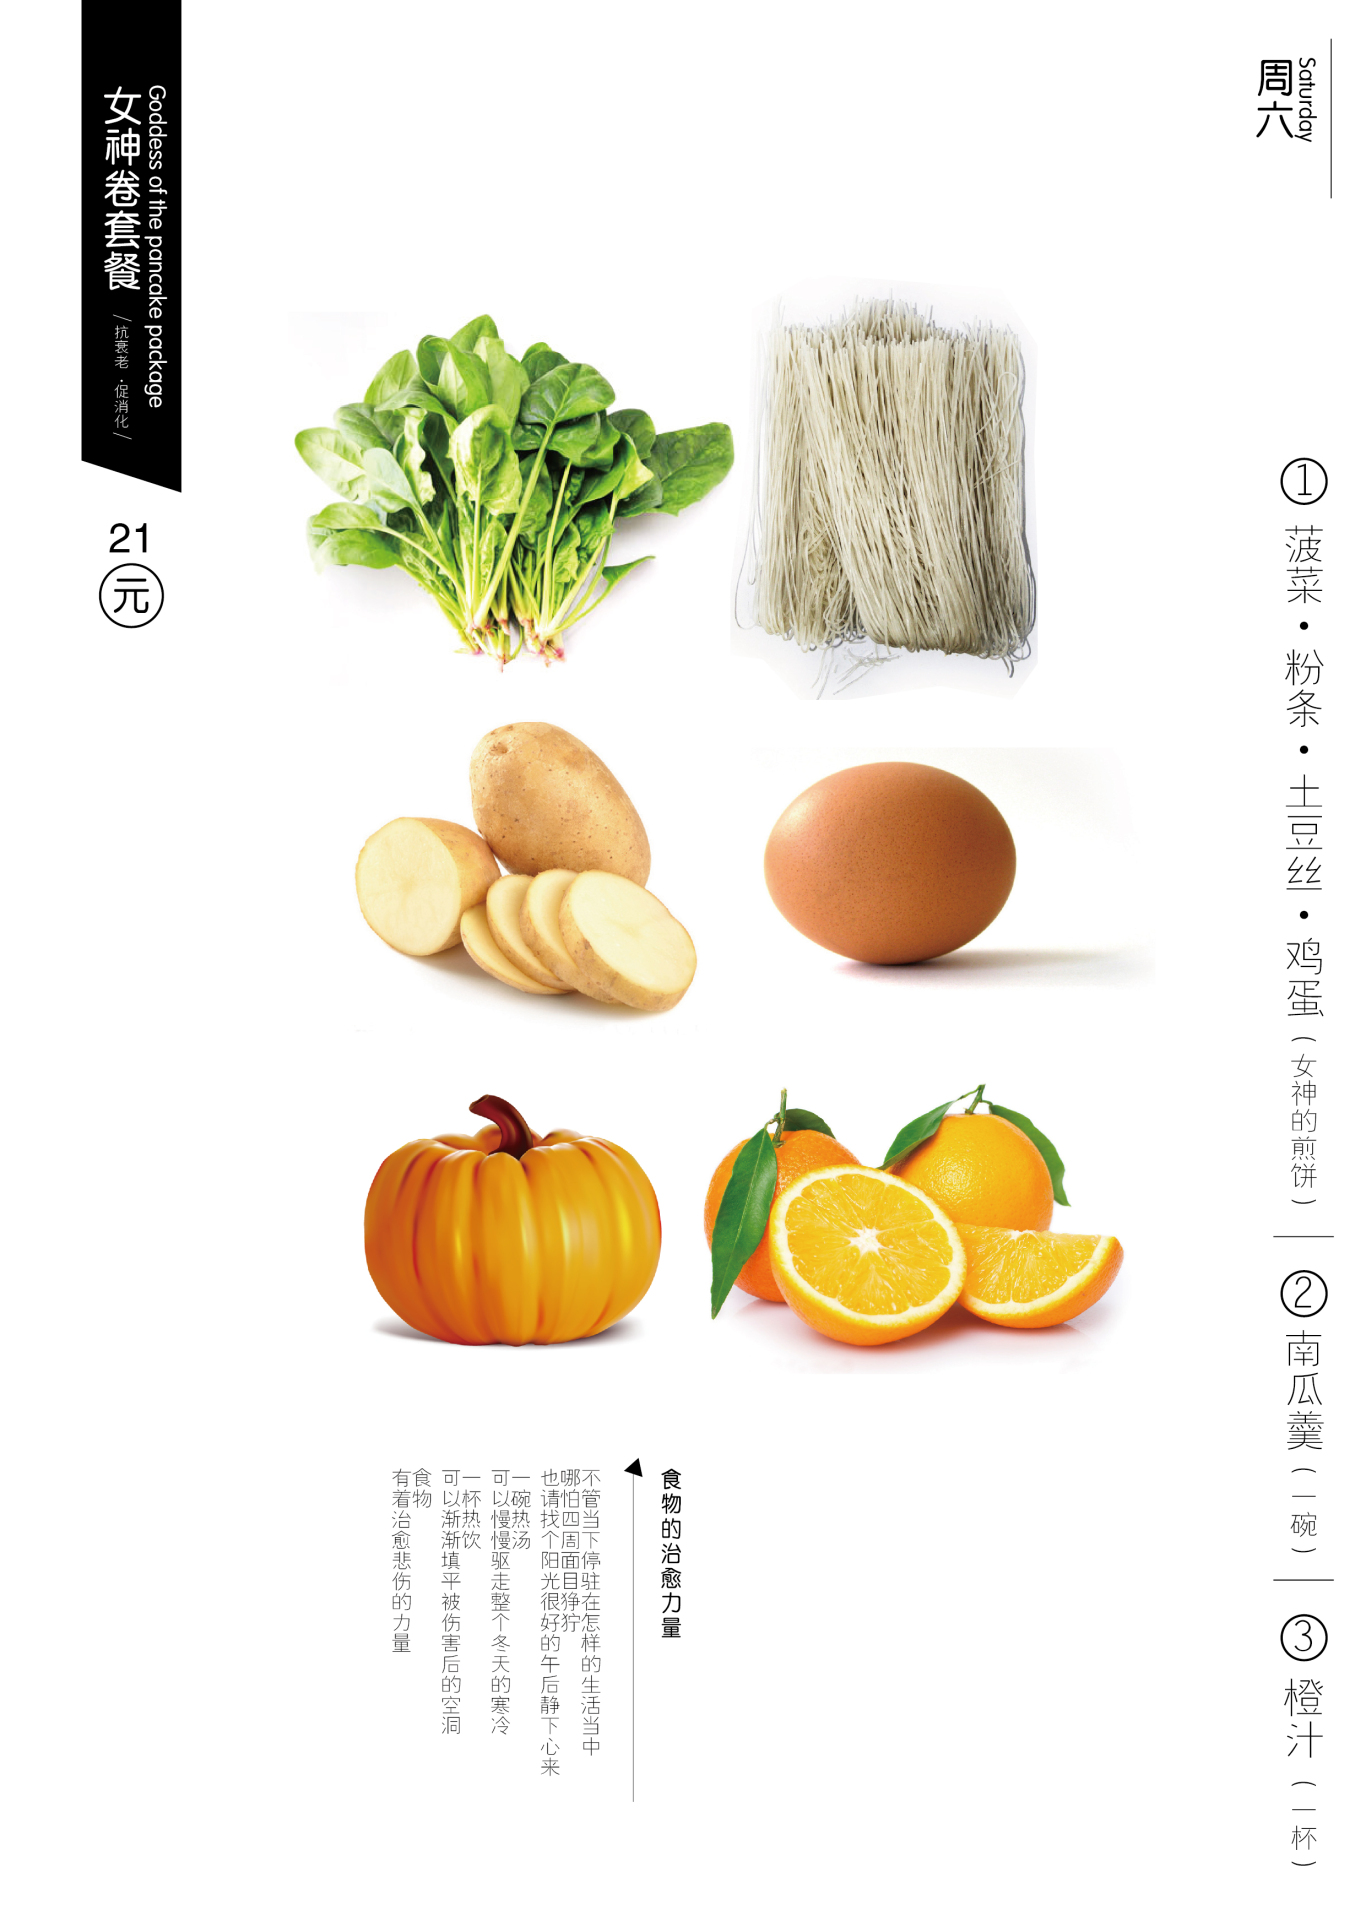 菜菜卷包装菜单设计图0